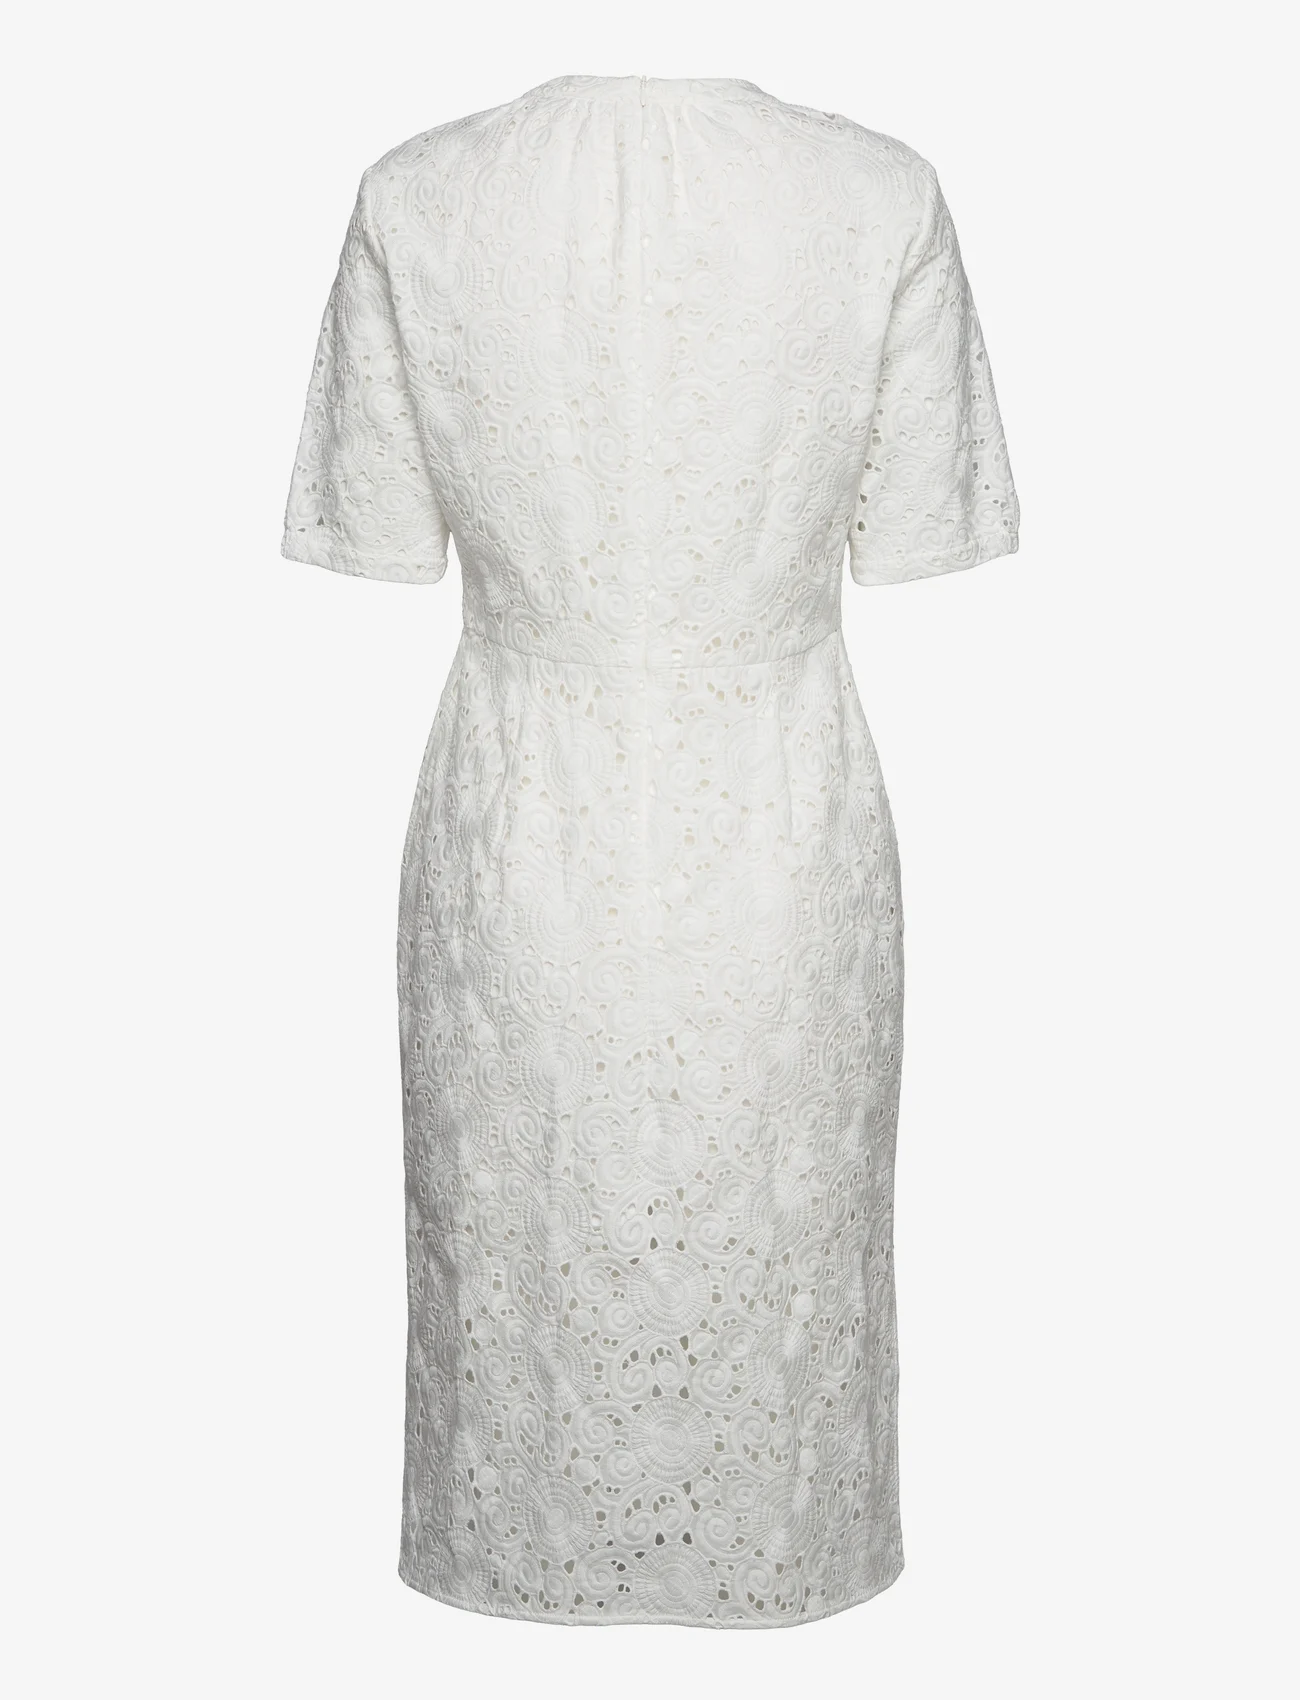 Bruuns Bazaar - Armeria Harisa dress - midiklänningar - white - 1